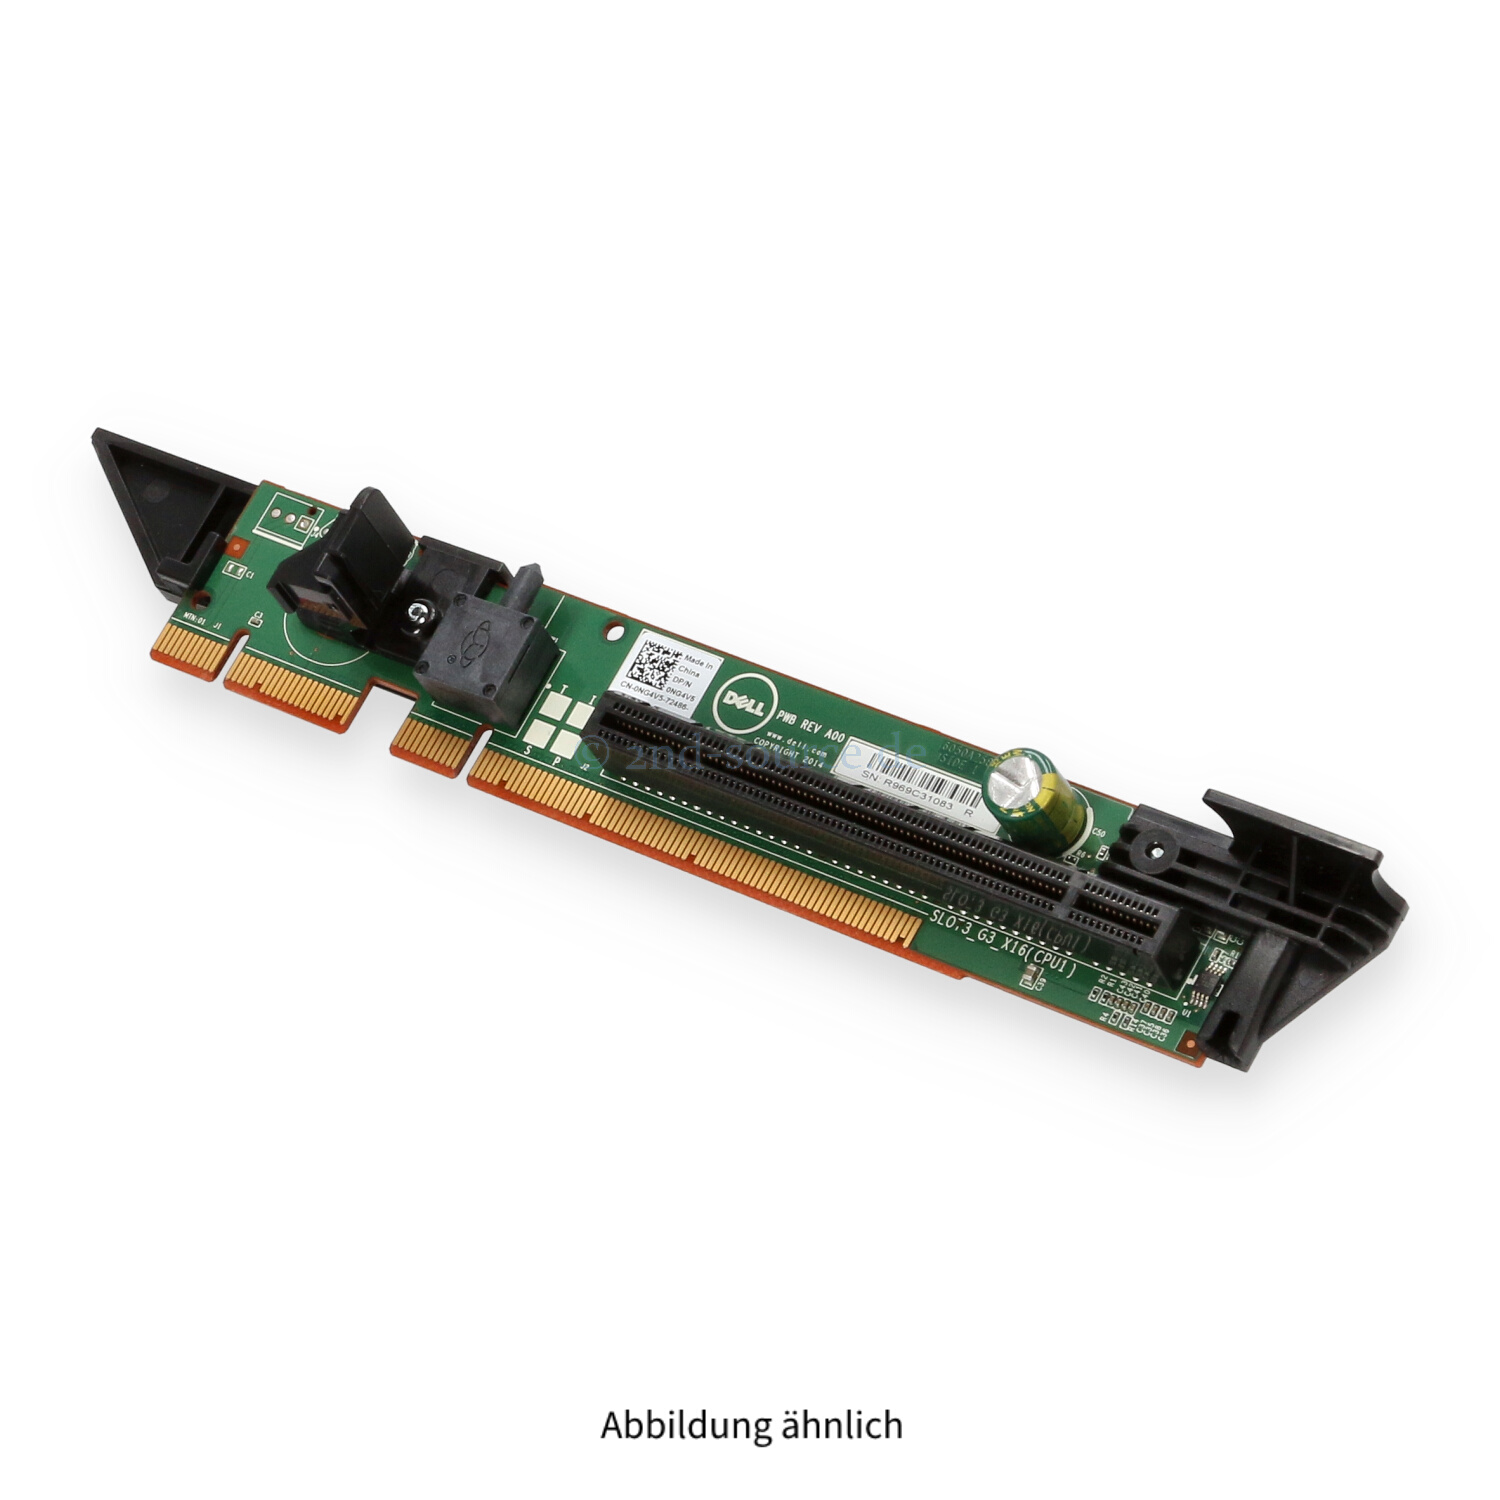 Dell 1x16 PCI Riser3 PowerEdge R630 NG4V5 0NG4V5